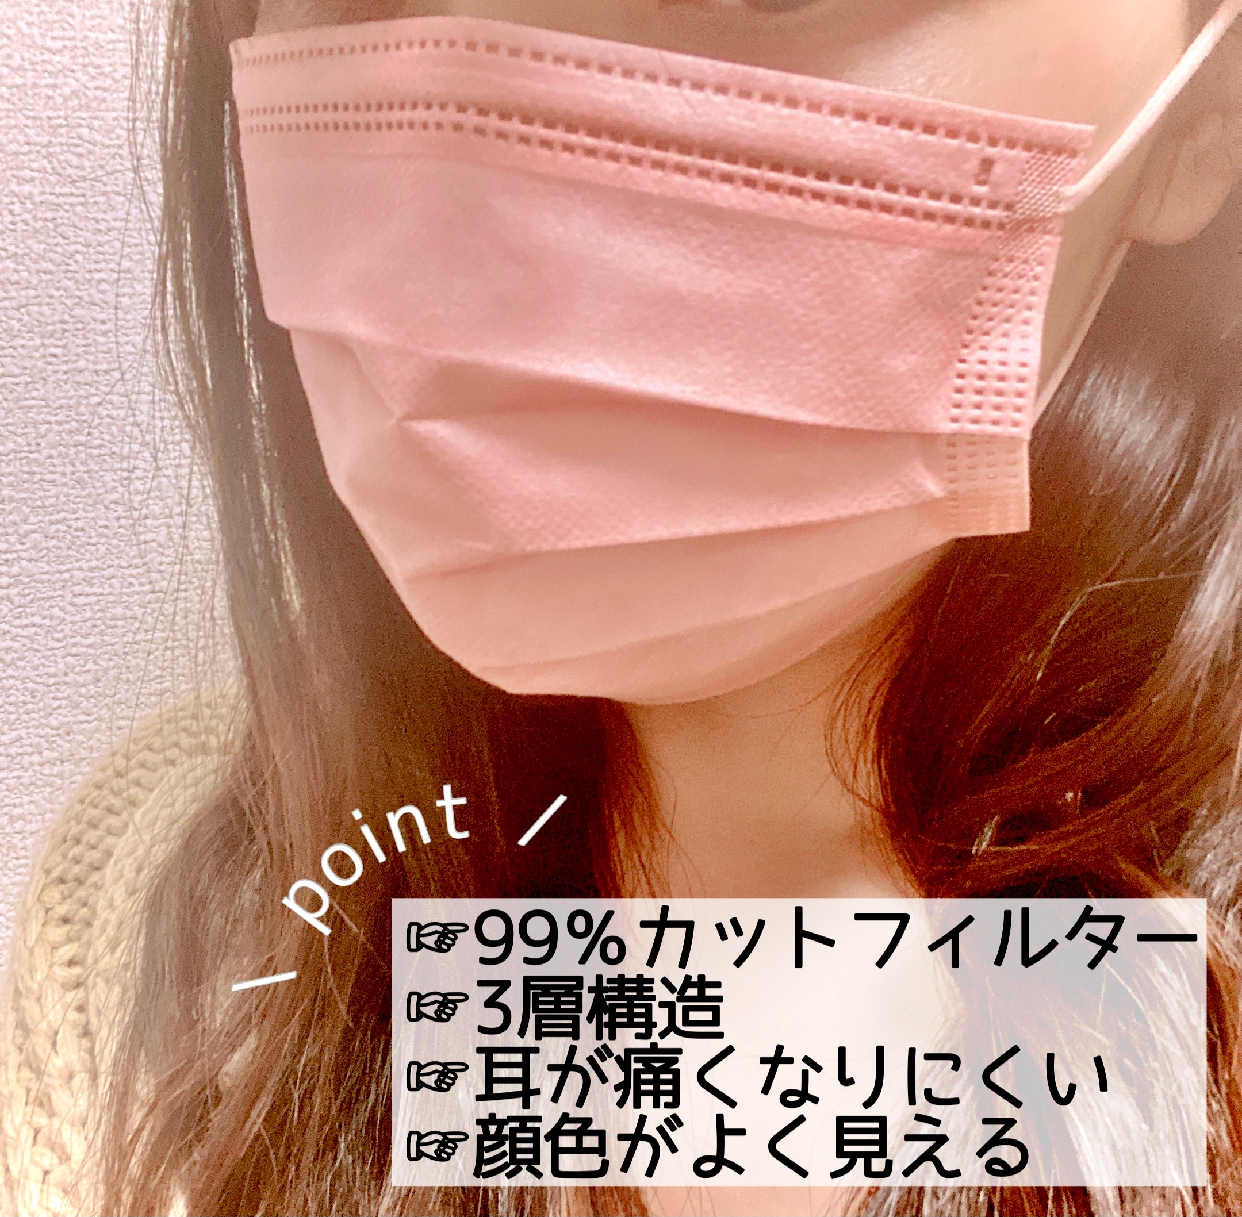 WEIMALL(ウェイモール) 血色マスクを使ったChihiroさんのクチコミ画像1